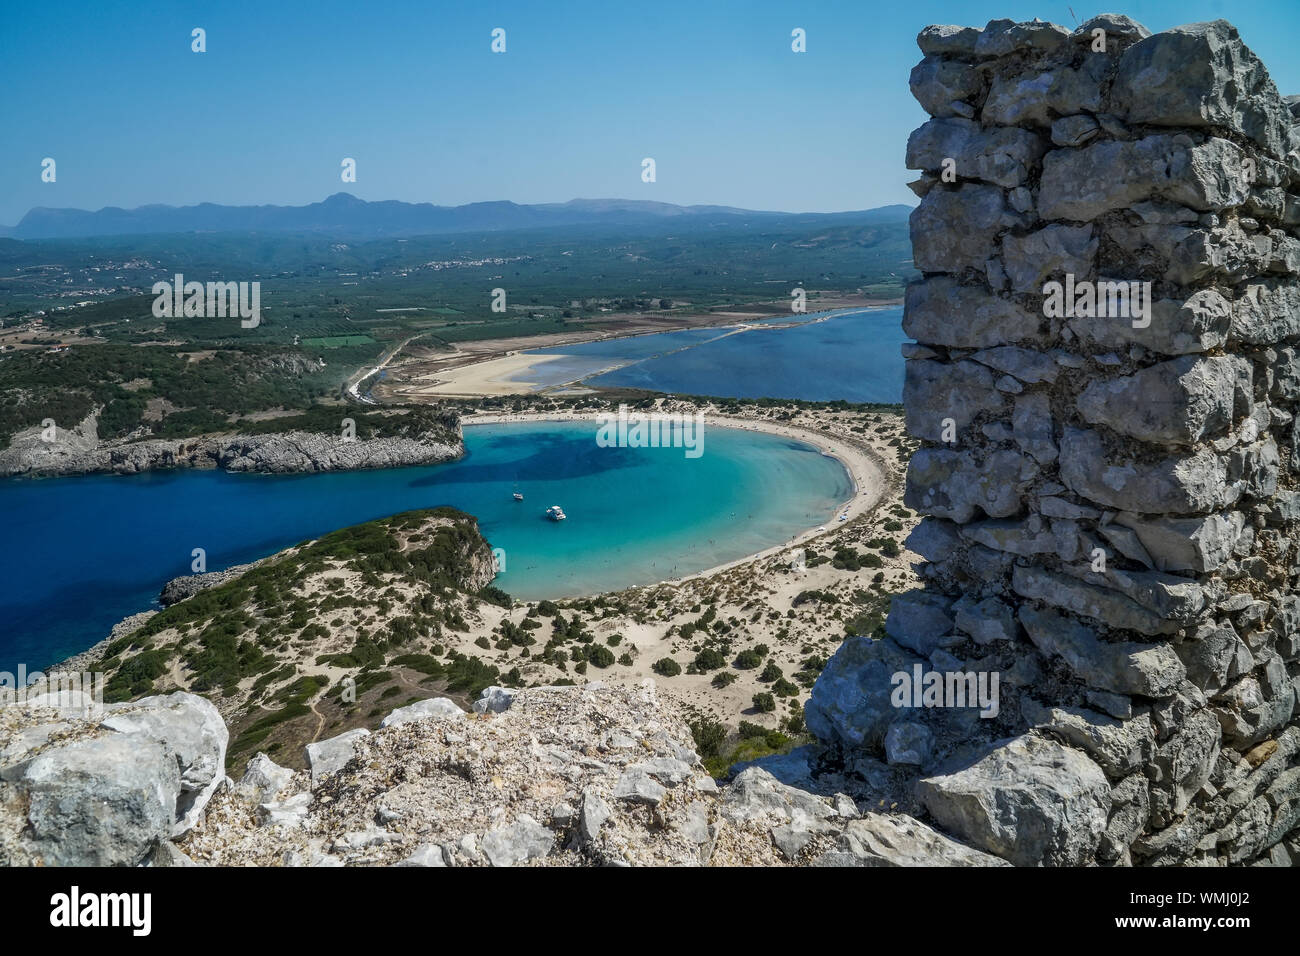 Vue panoramique vue aérienne de la plage de Voidokilia, une des plus belles plages de l'Europe méditerranéenne, magnifique lagon de Voidokilia à partir d'un point de vue élevé, Banque D'Images